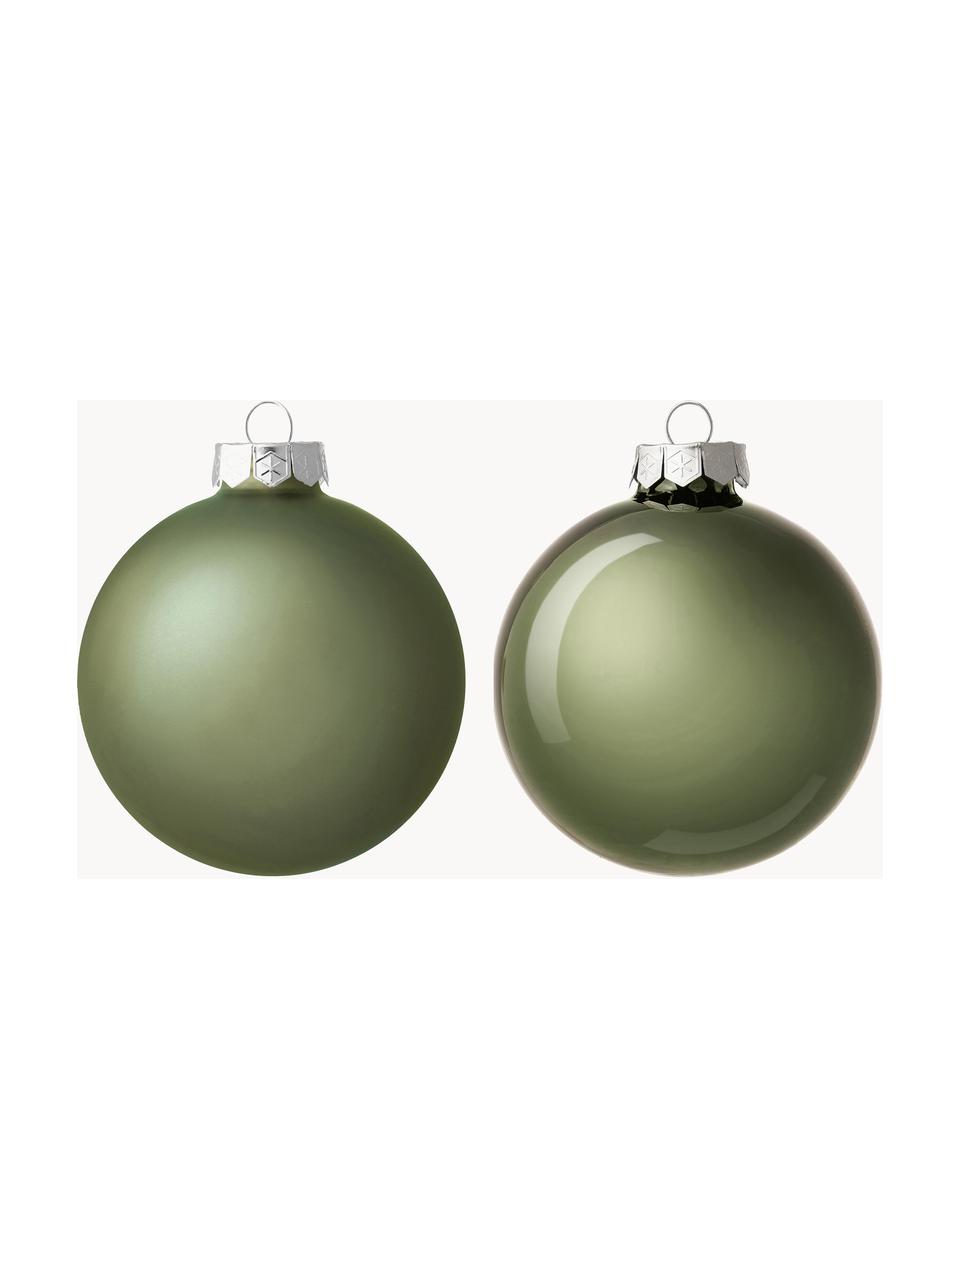 Sada vánočních ozdob Evergreen, 18 ks, Šalvějově zelená, Š 8 cm, V 8 cm